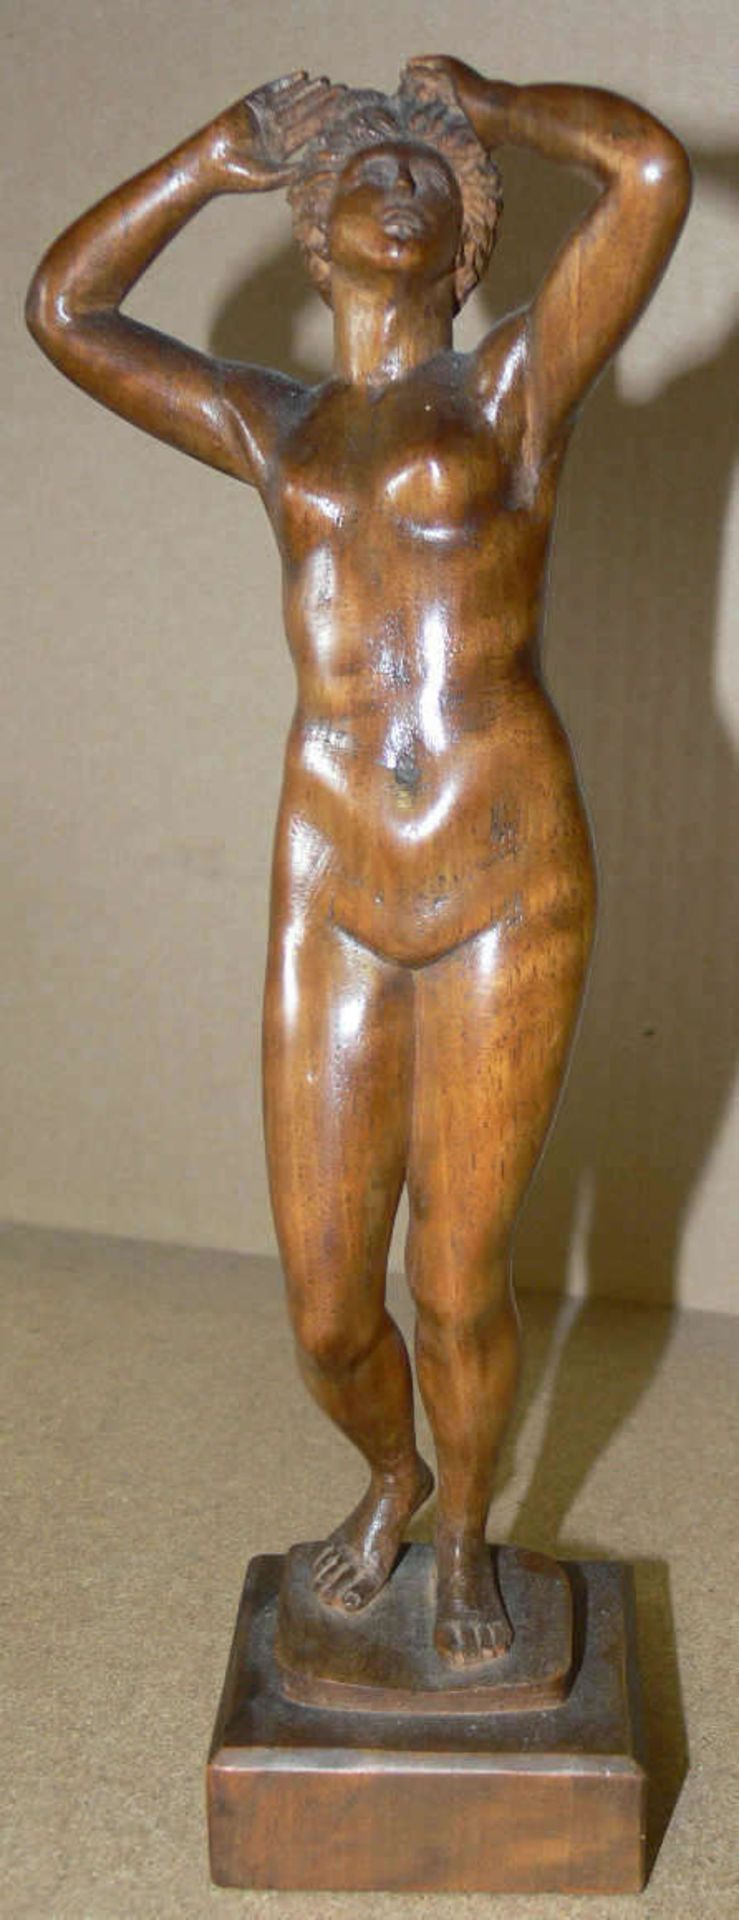 Holz - Skulptur "Frauen - Akt". Figur auf Sockel. H: ca. 29 cm.